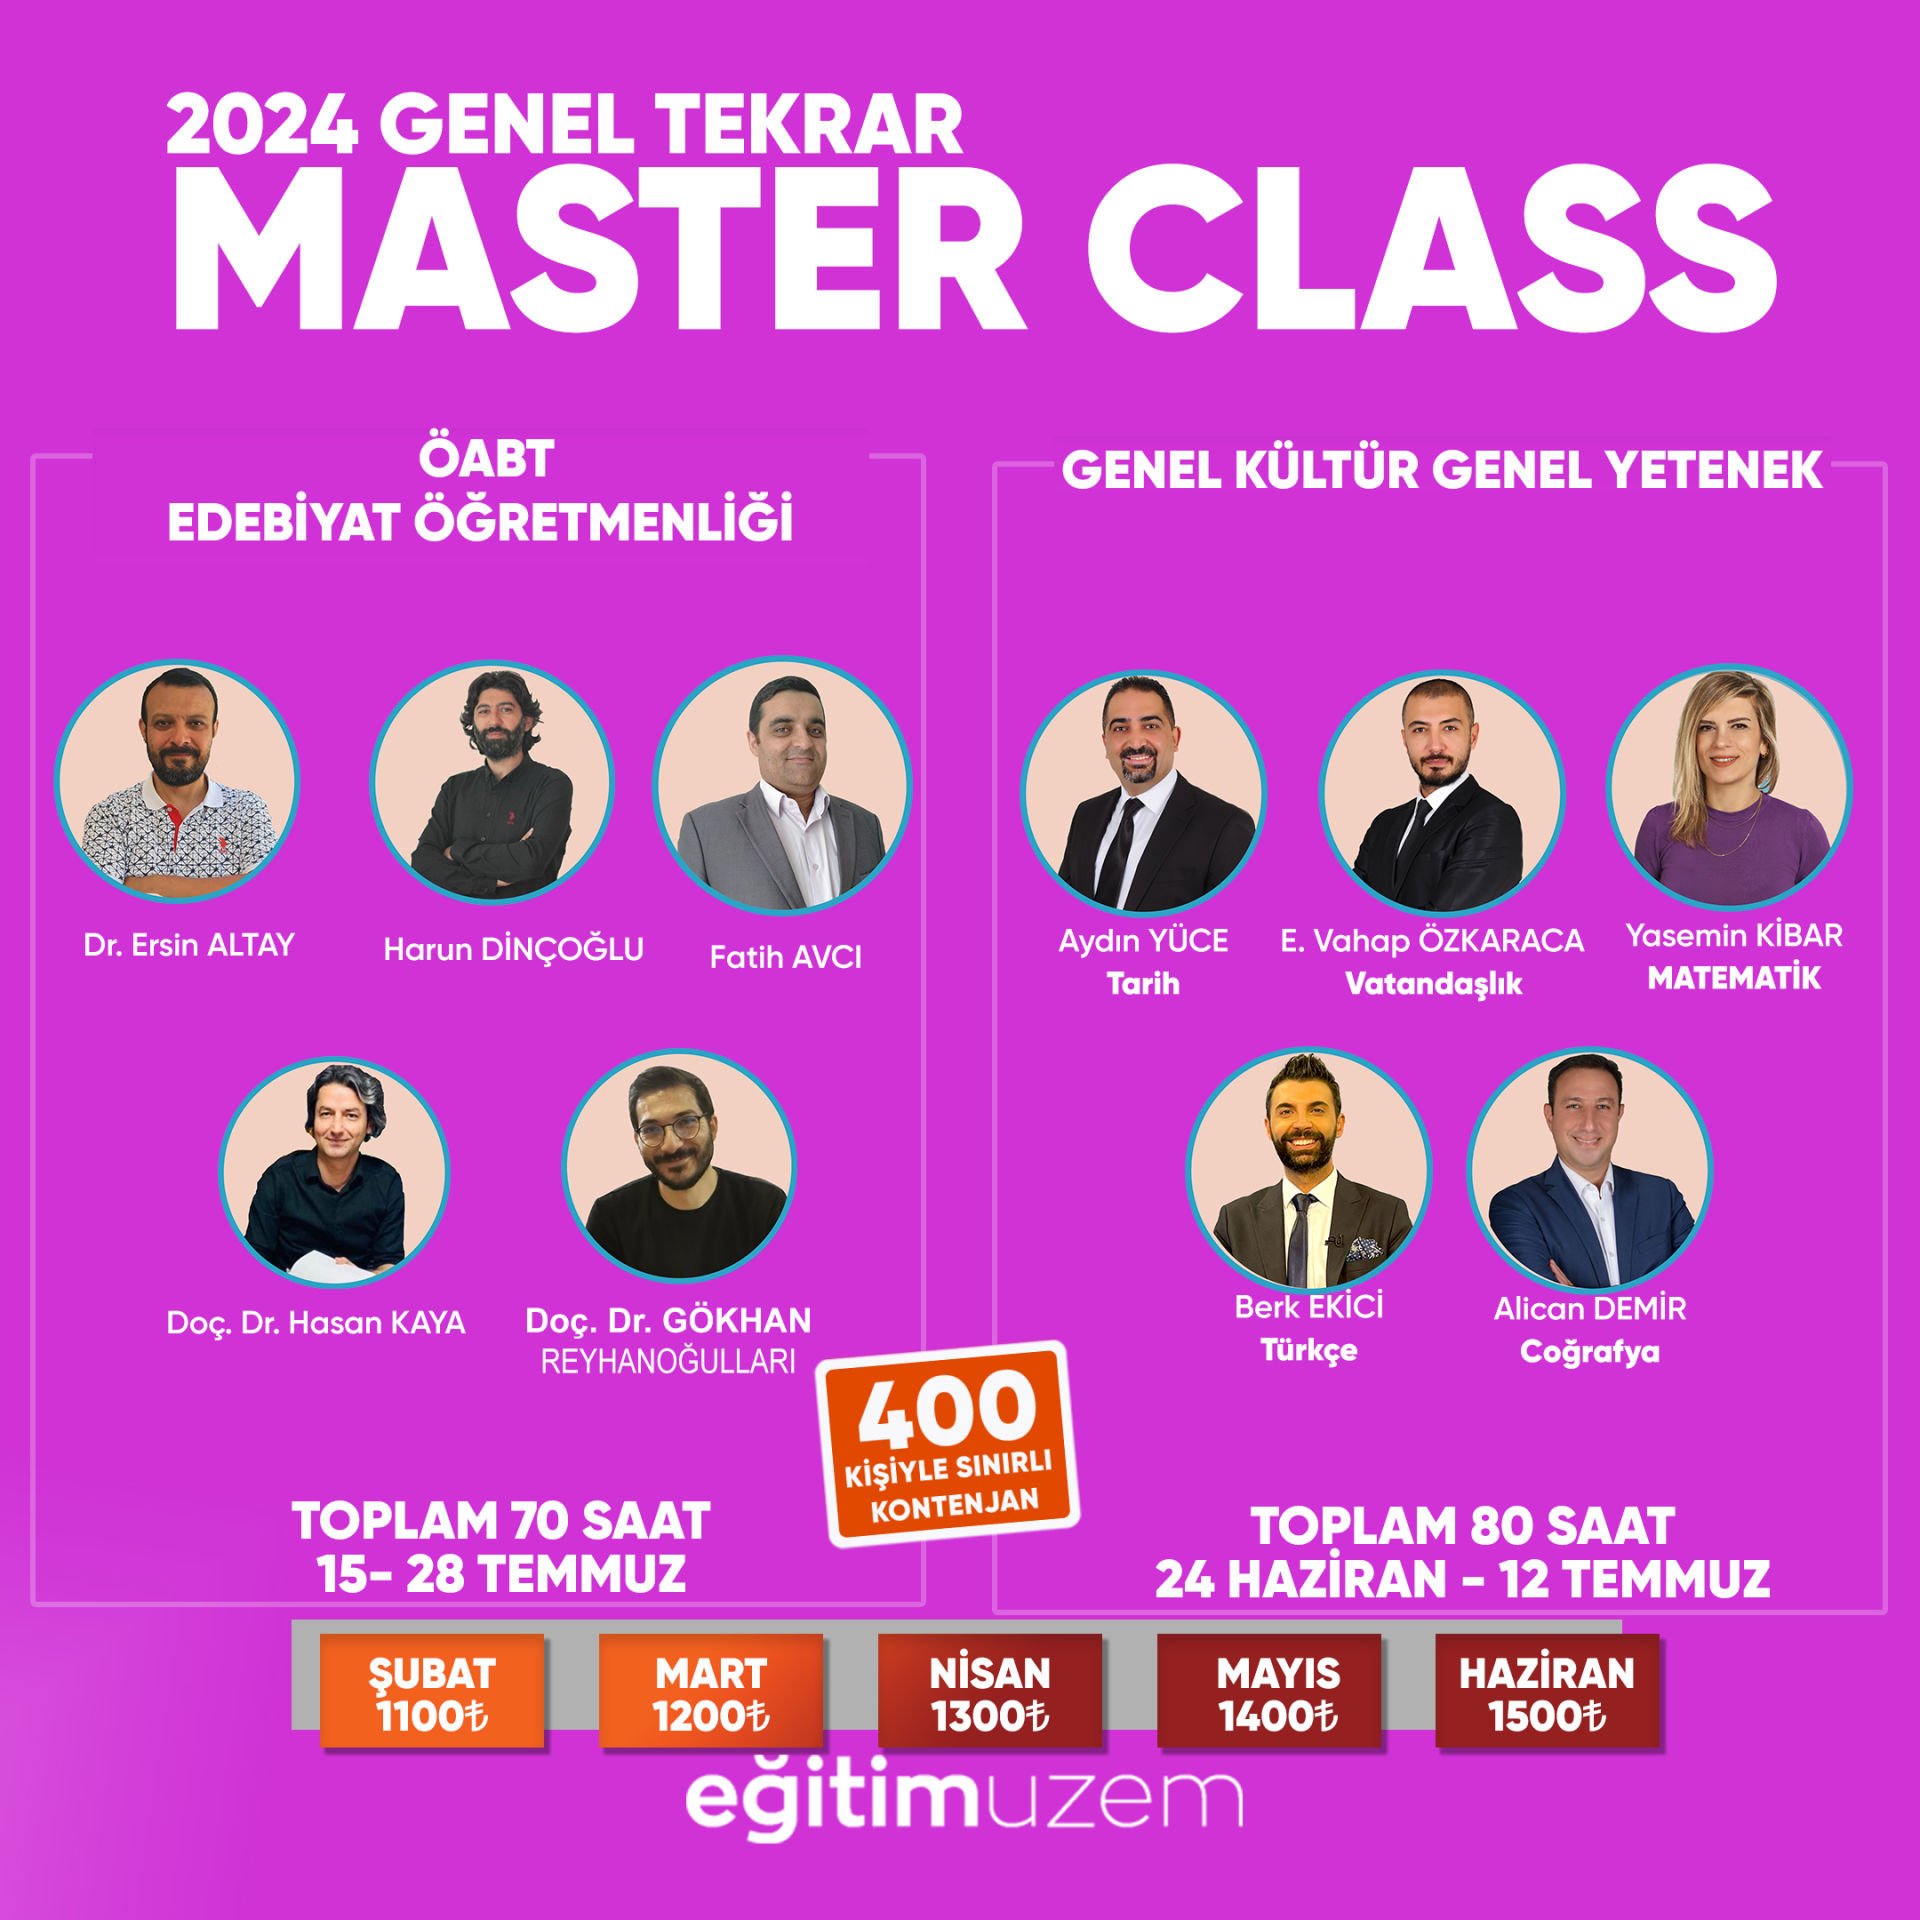 2024 KPSS Genel Tekrar Master Class ÖABT Türk Dili ve Edebiyatı Öğretmenliği + Genel Yetenek-Genel Kültür